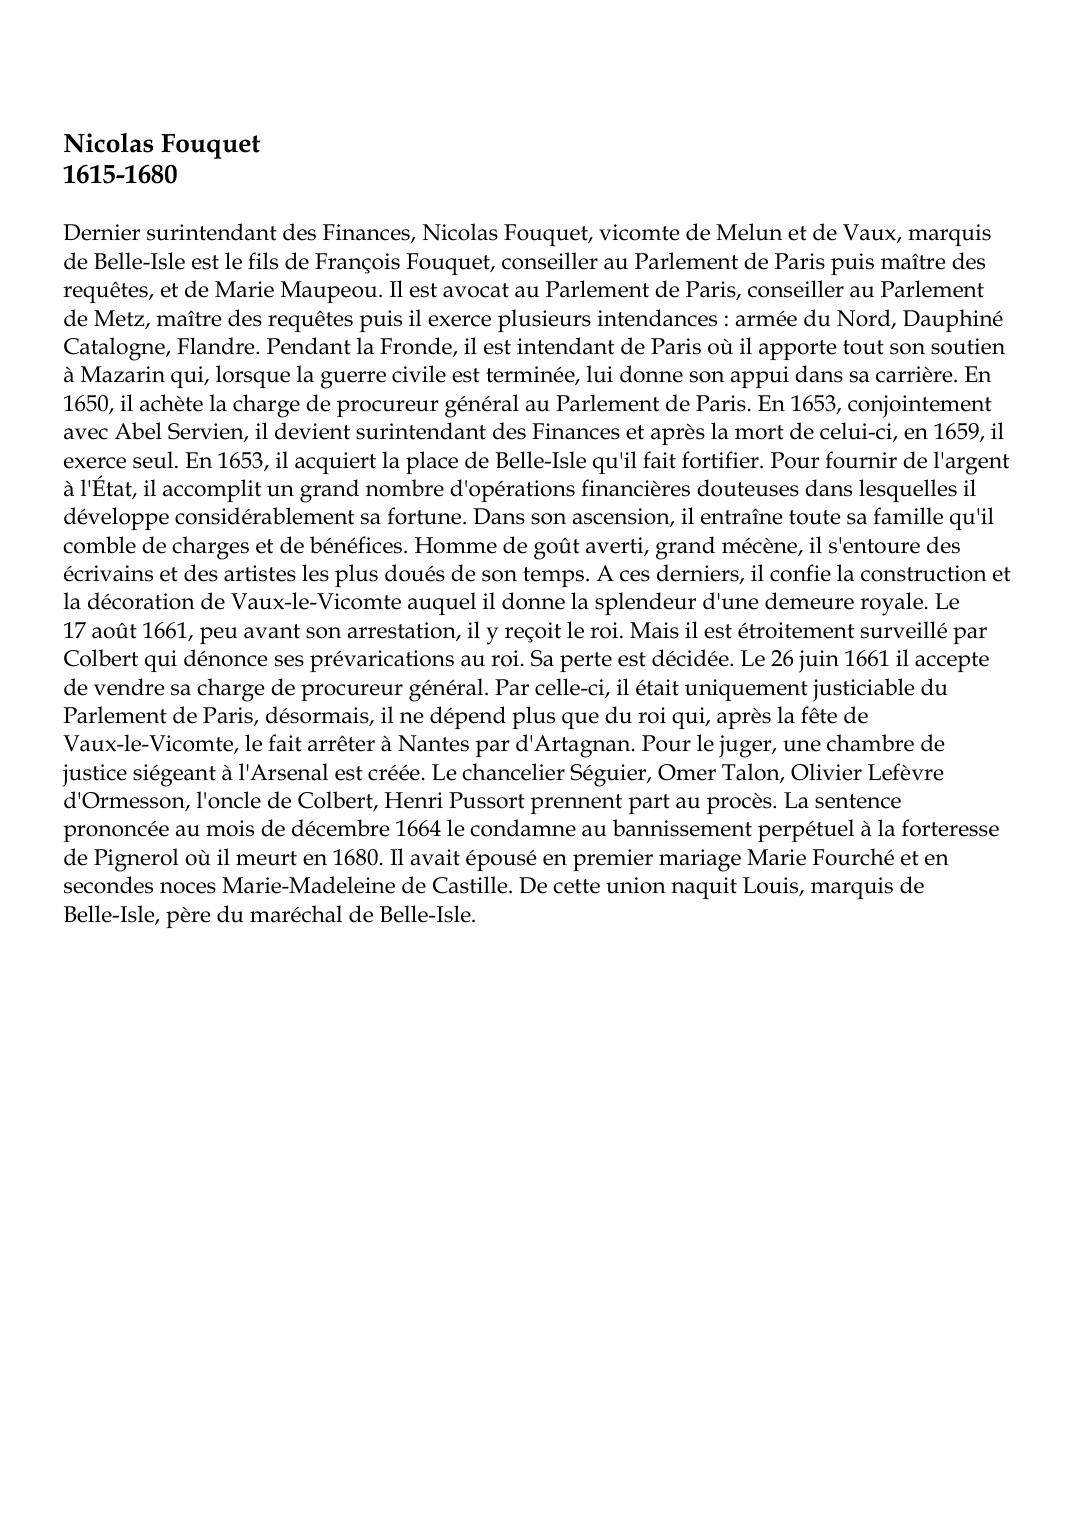 Prévisualisation du document Nicolas Fouquet1615-1680Dernier surintendant des Finances, Nicolas Fouquet, vicomte de Melun et de Vaux, marquisde Belle-Isle est le fils de François Fouquet, conseiller au Parlement de Paris puis maître desrequêtes, et de Marie Maupeou.